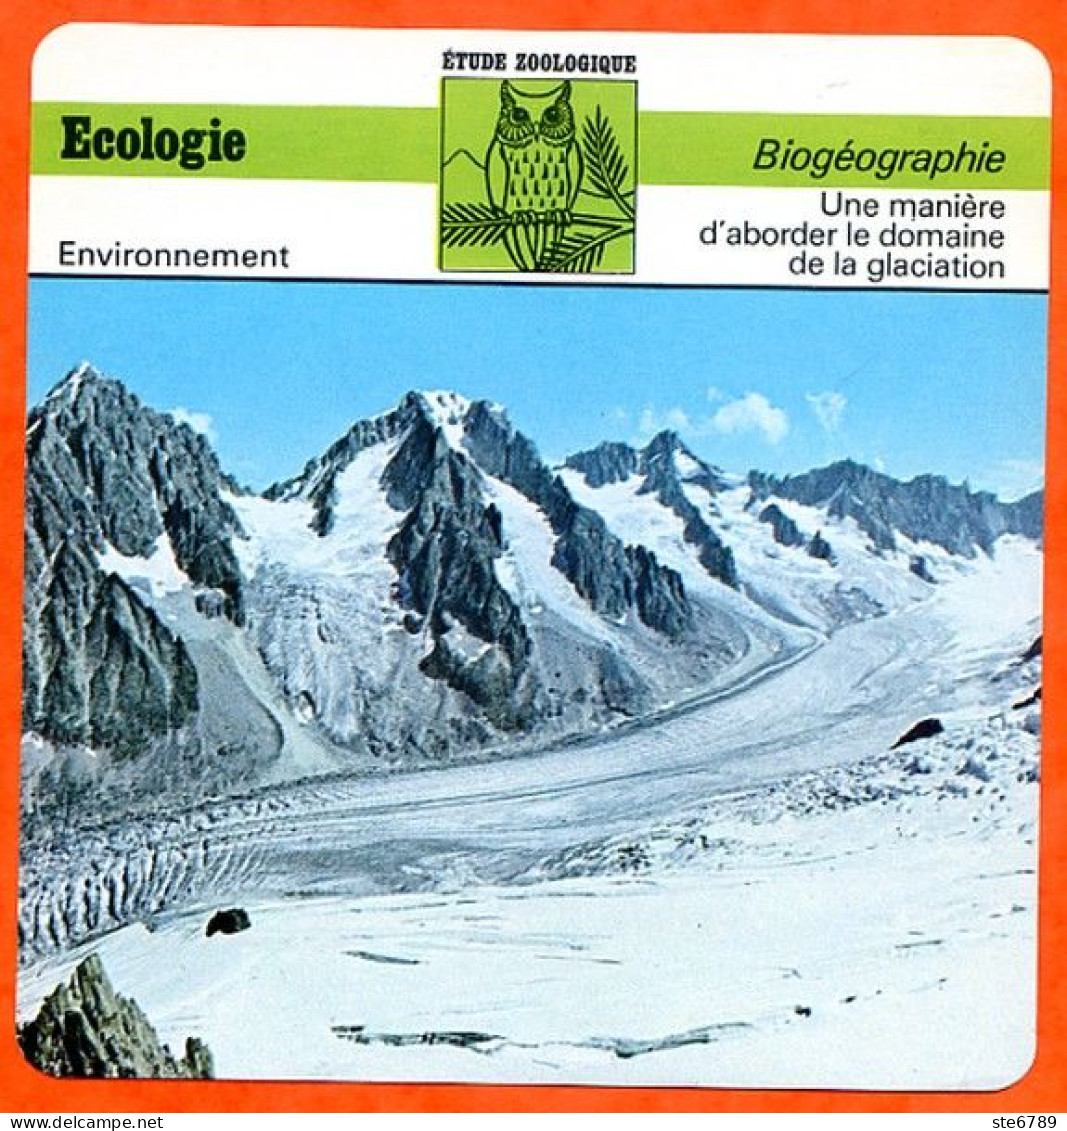 Fiche Ecologie Glaciation Illustration Glacier Du Tour Aiguilles Argentière Biogéographie Etude Zoologique Environnement - Aardrijkskunde